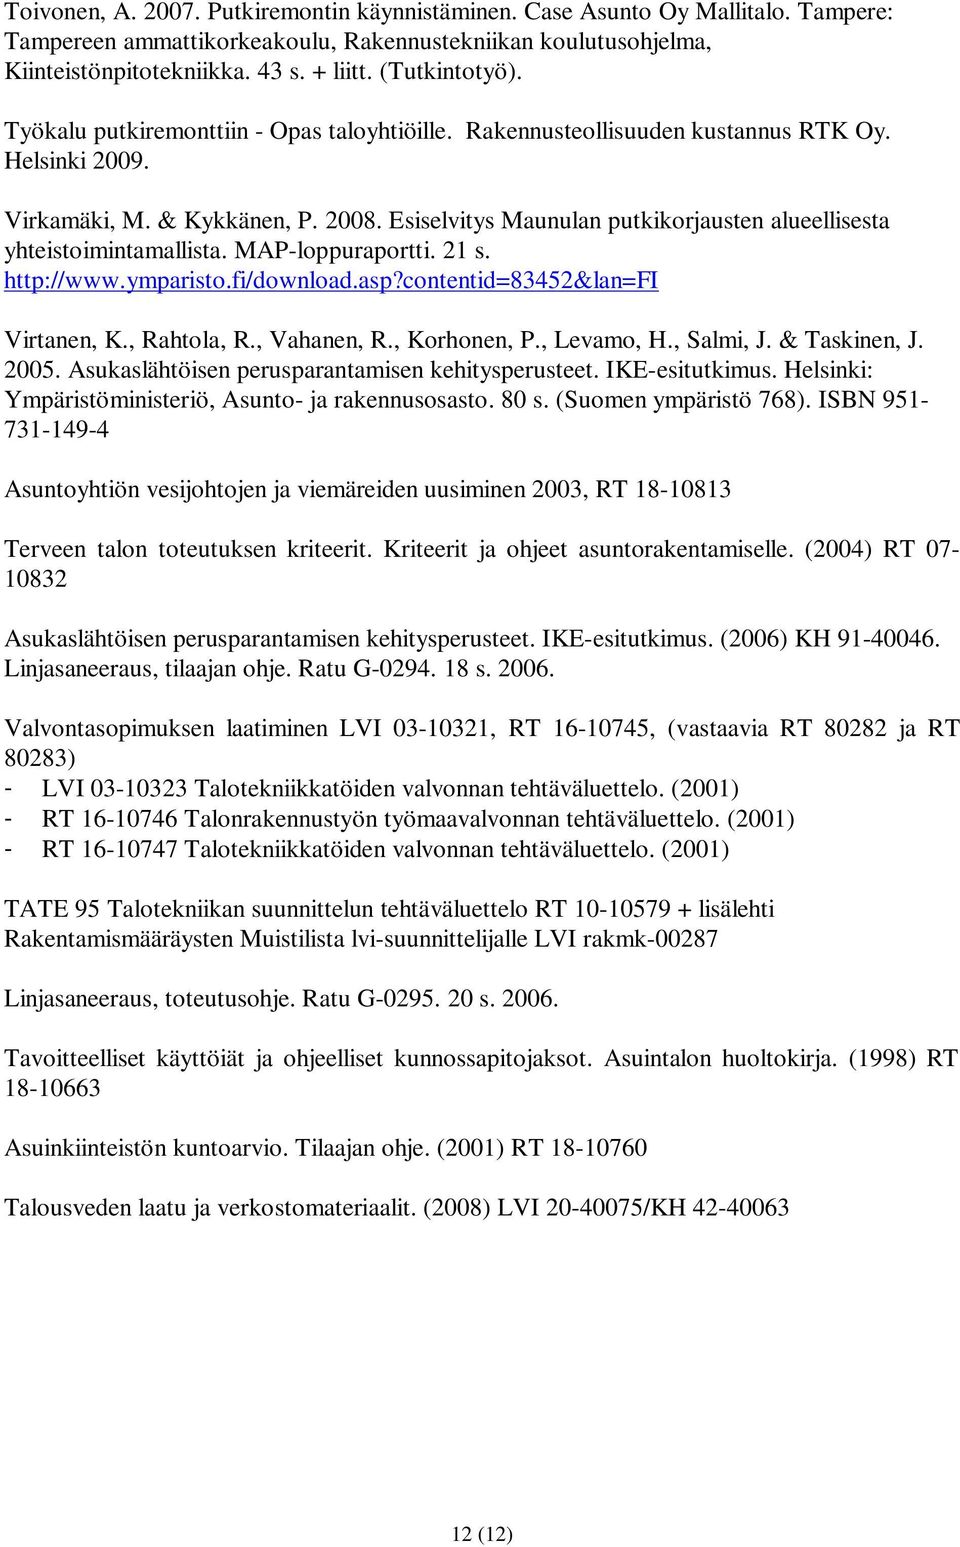 Esiselvitys Maunulan putkikorjausten alueellisesta yhteistoimintamallista. MAP-loppuraportti. 21 s. http://www.ymparisto.fi/download.asp?contentid=83452&lan=fi Virtanen, K., Rahtola, R., Vahanen, R.